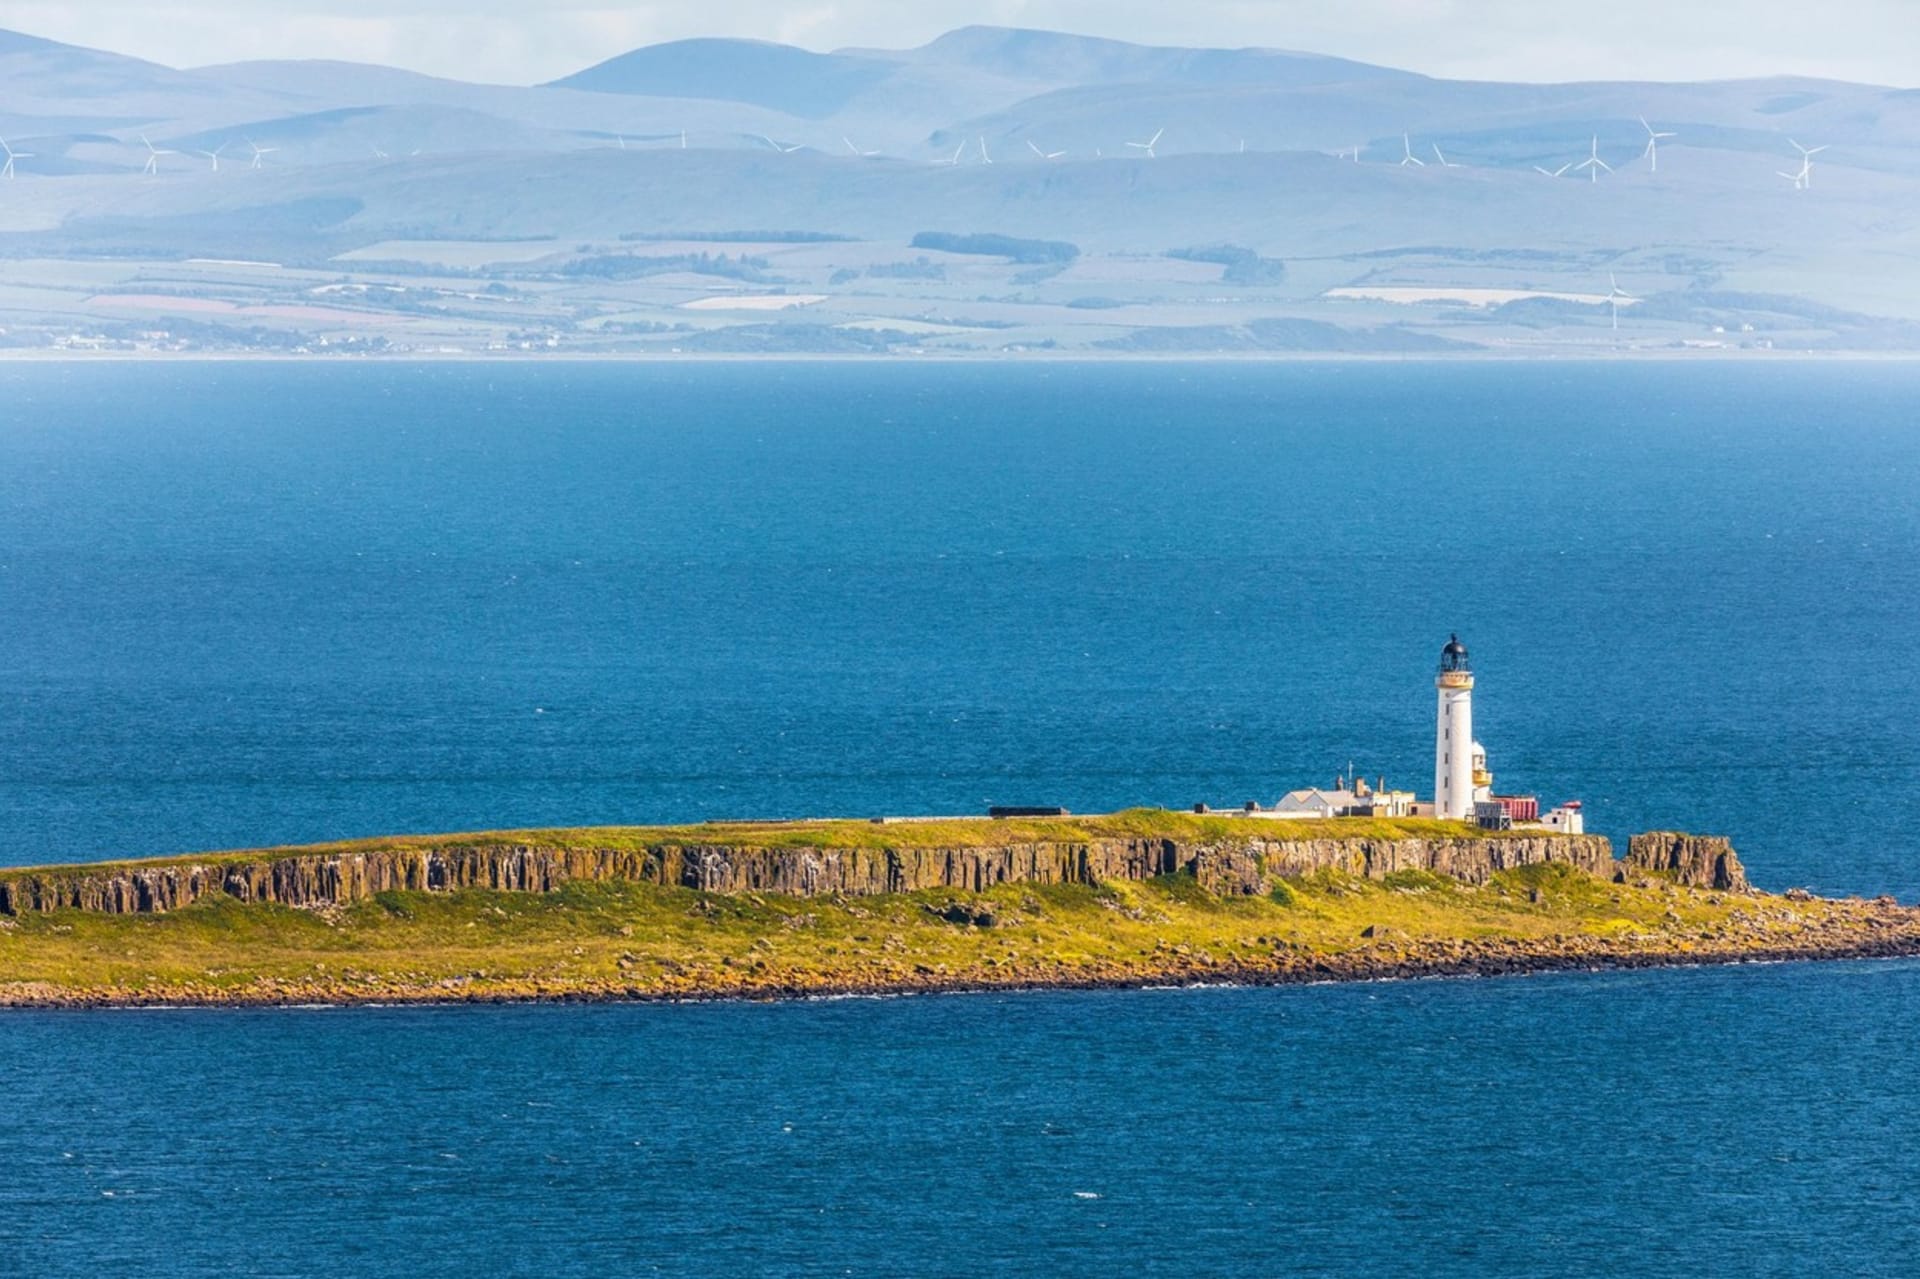 Pladda je neobydlený ostrov 1 km od jižního pobřeží ostrova Arran ve Firth of Clyde, západní Skotsko